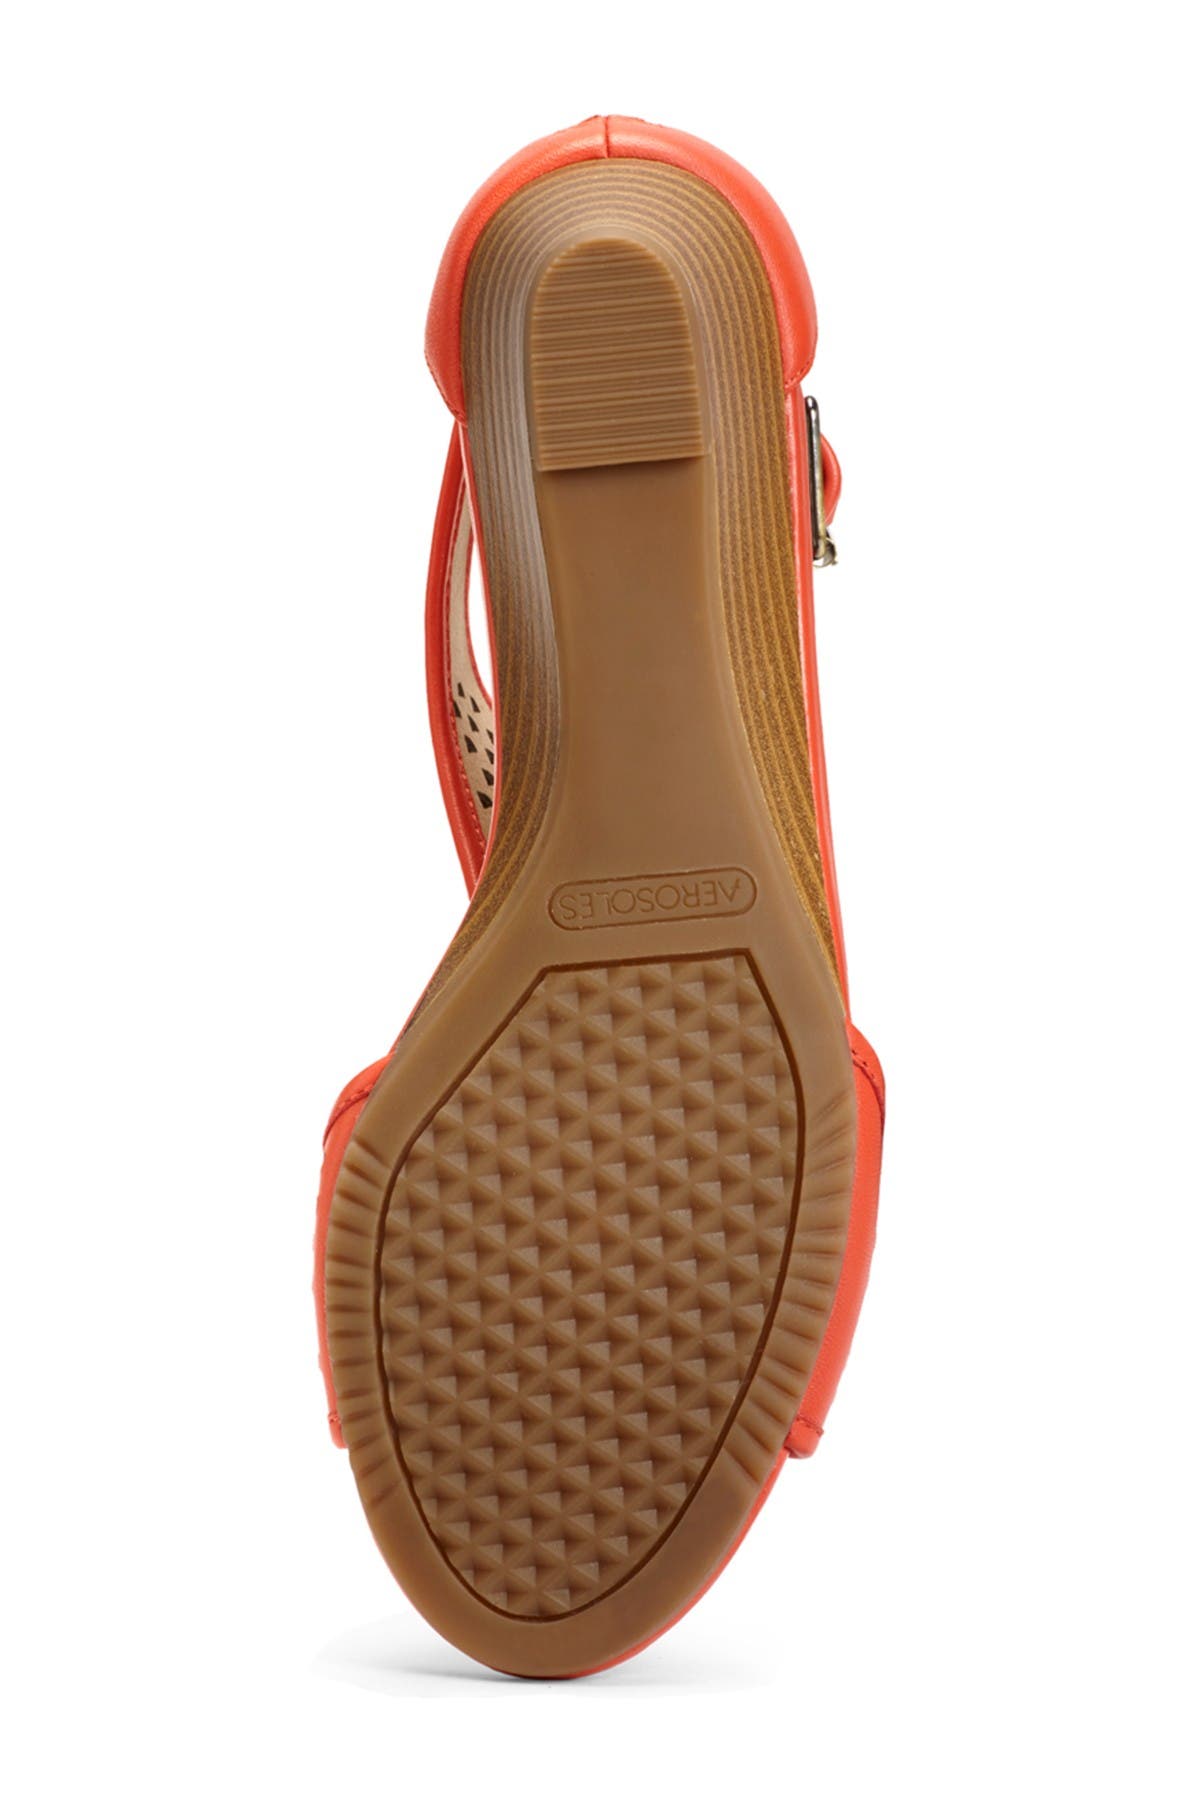 Aerosoles Sapphire Wedge Sandal In Medium Orange1